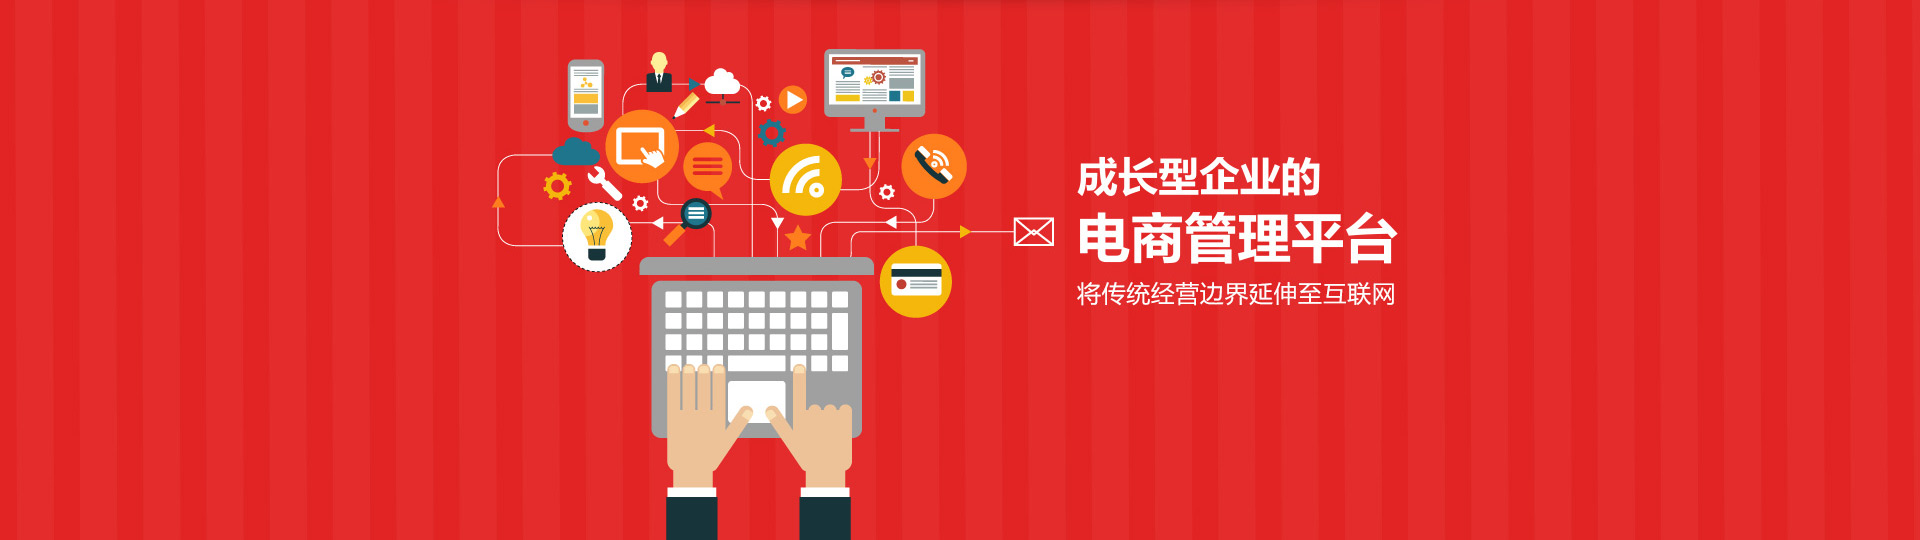 台州用友软件、台州ERP电子商务解决方案